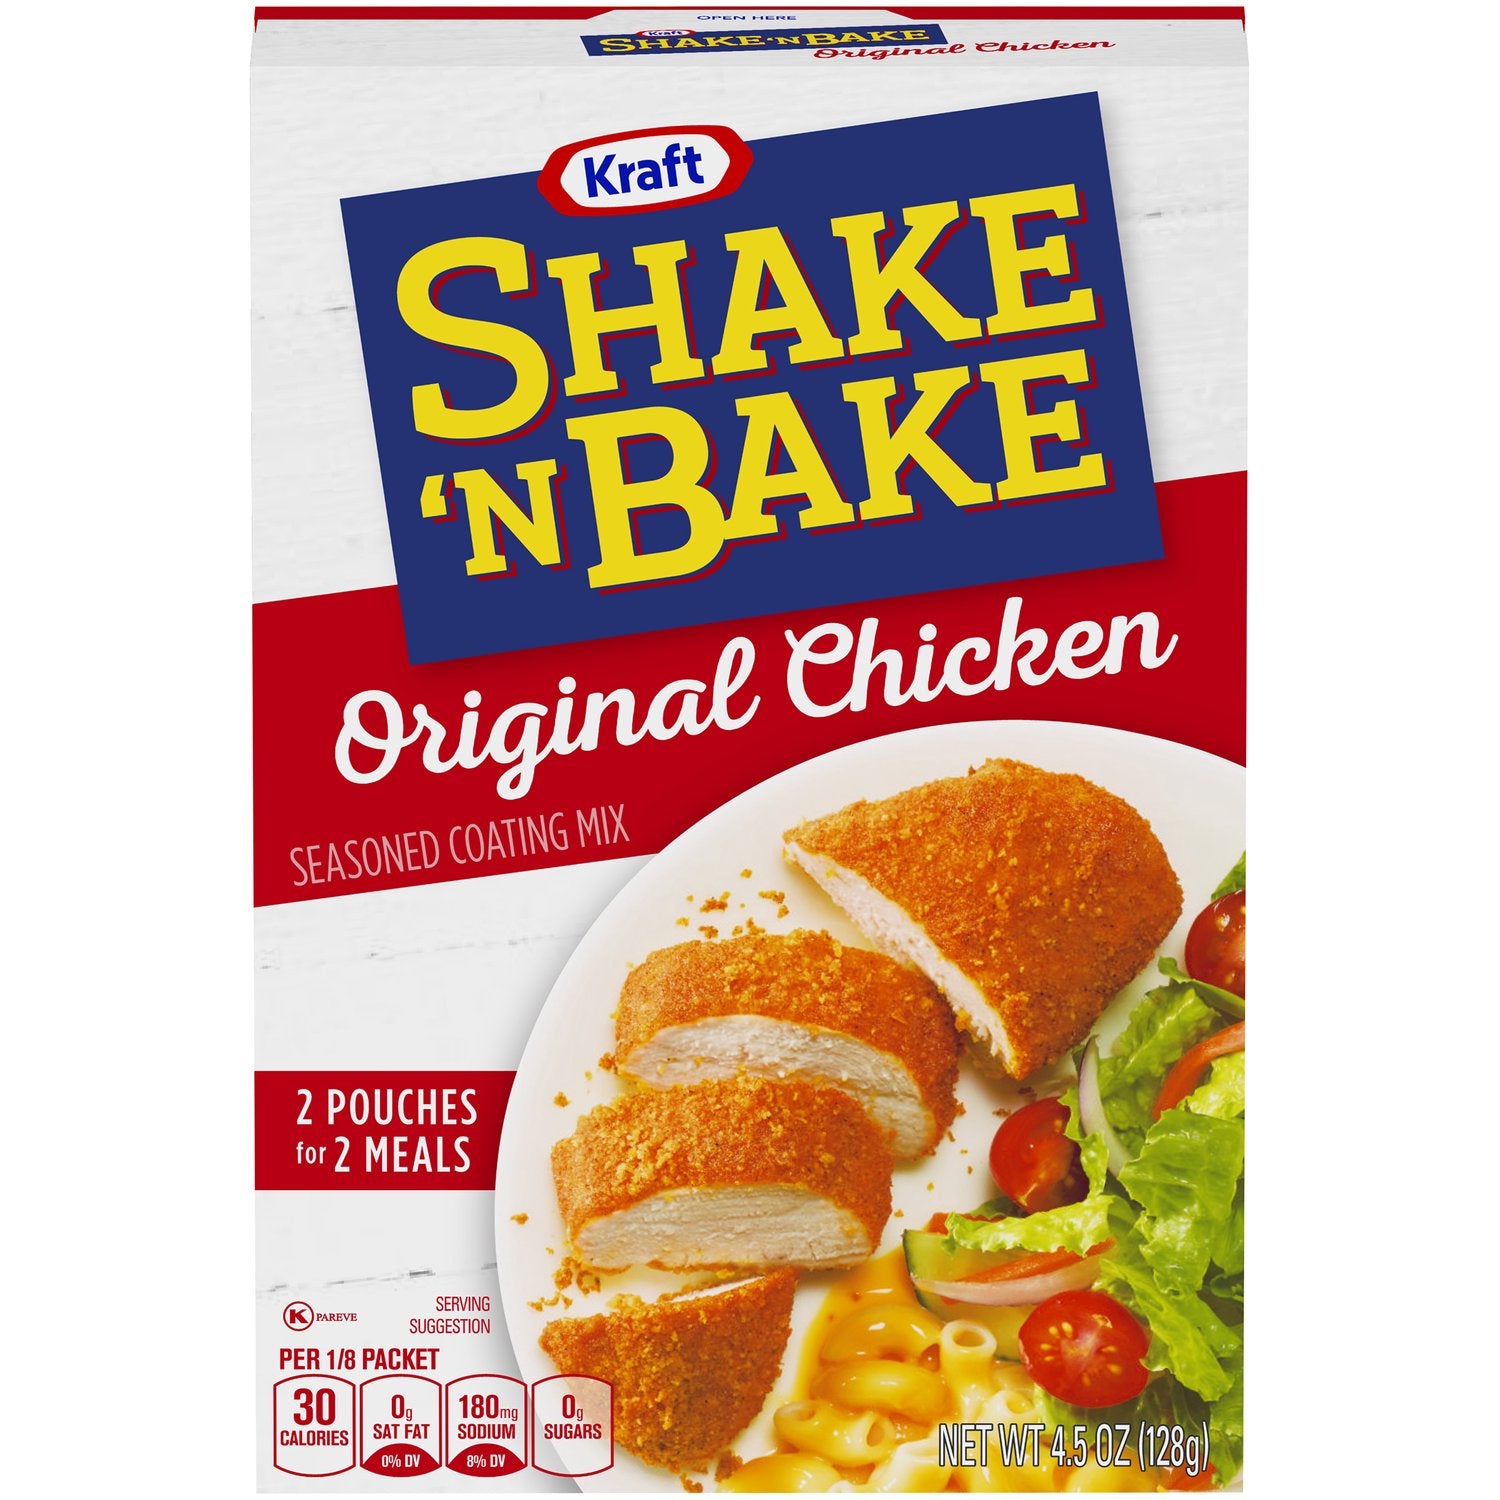 Shake 'N Bake Original Recipe Chicken 4.5oz